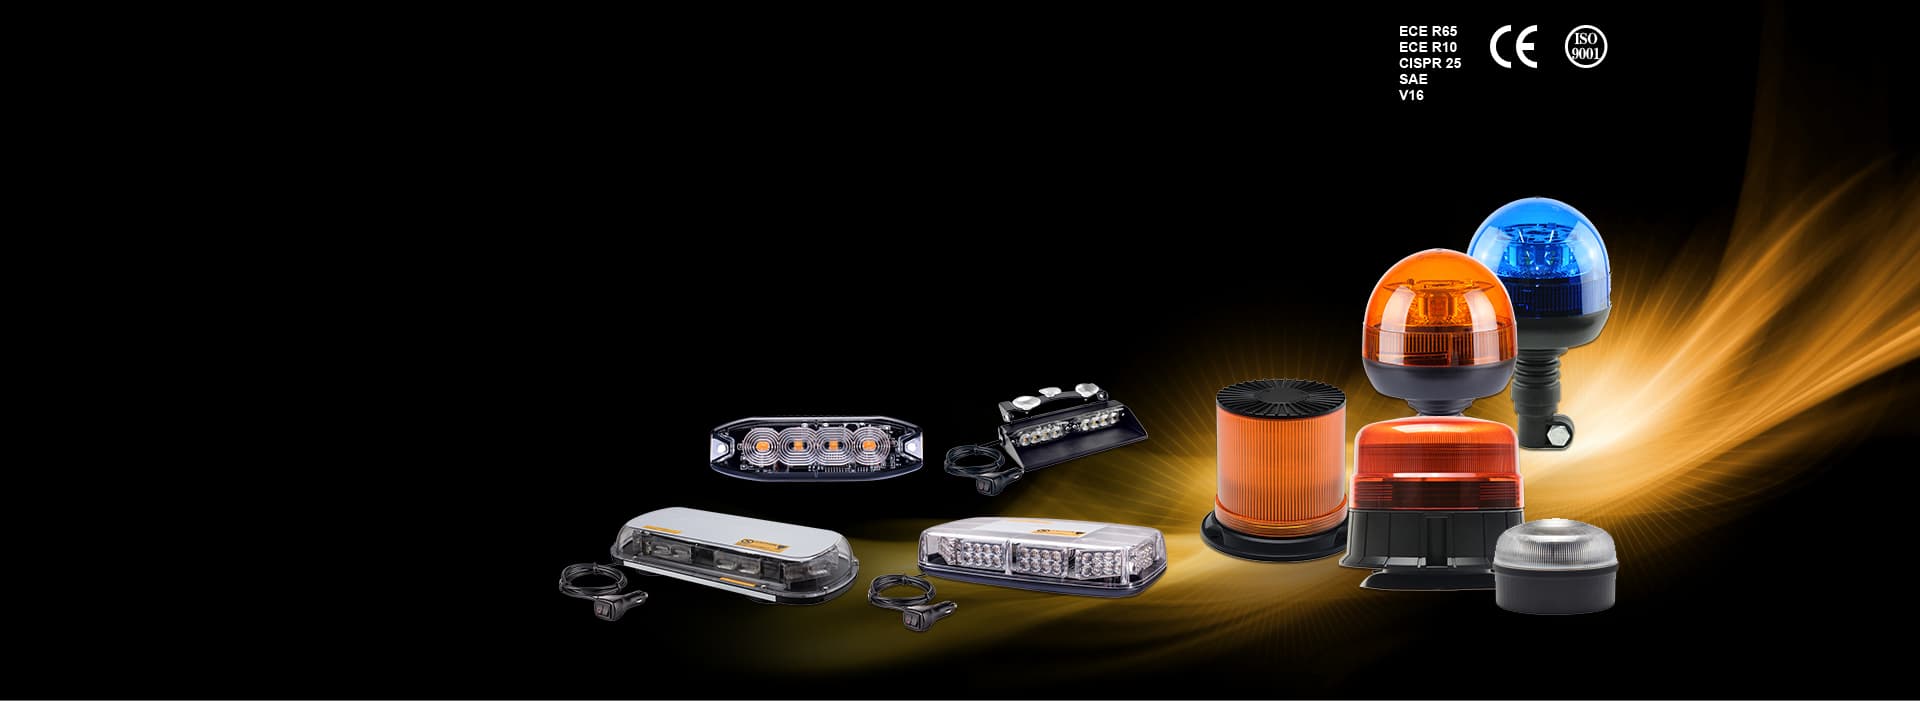 LED Vehicle Safety Lights Manufacturer